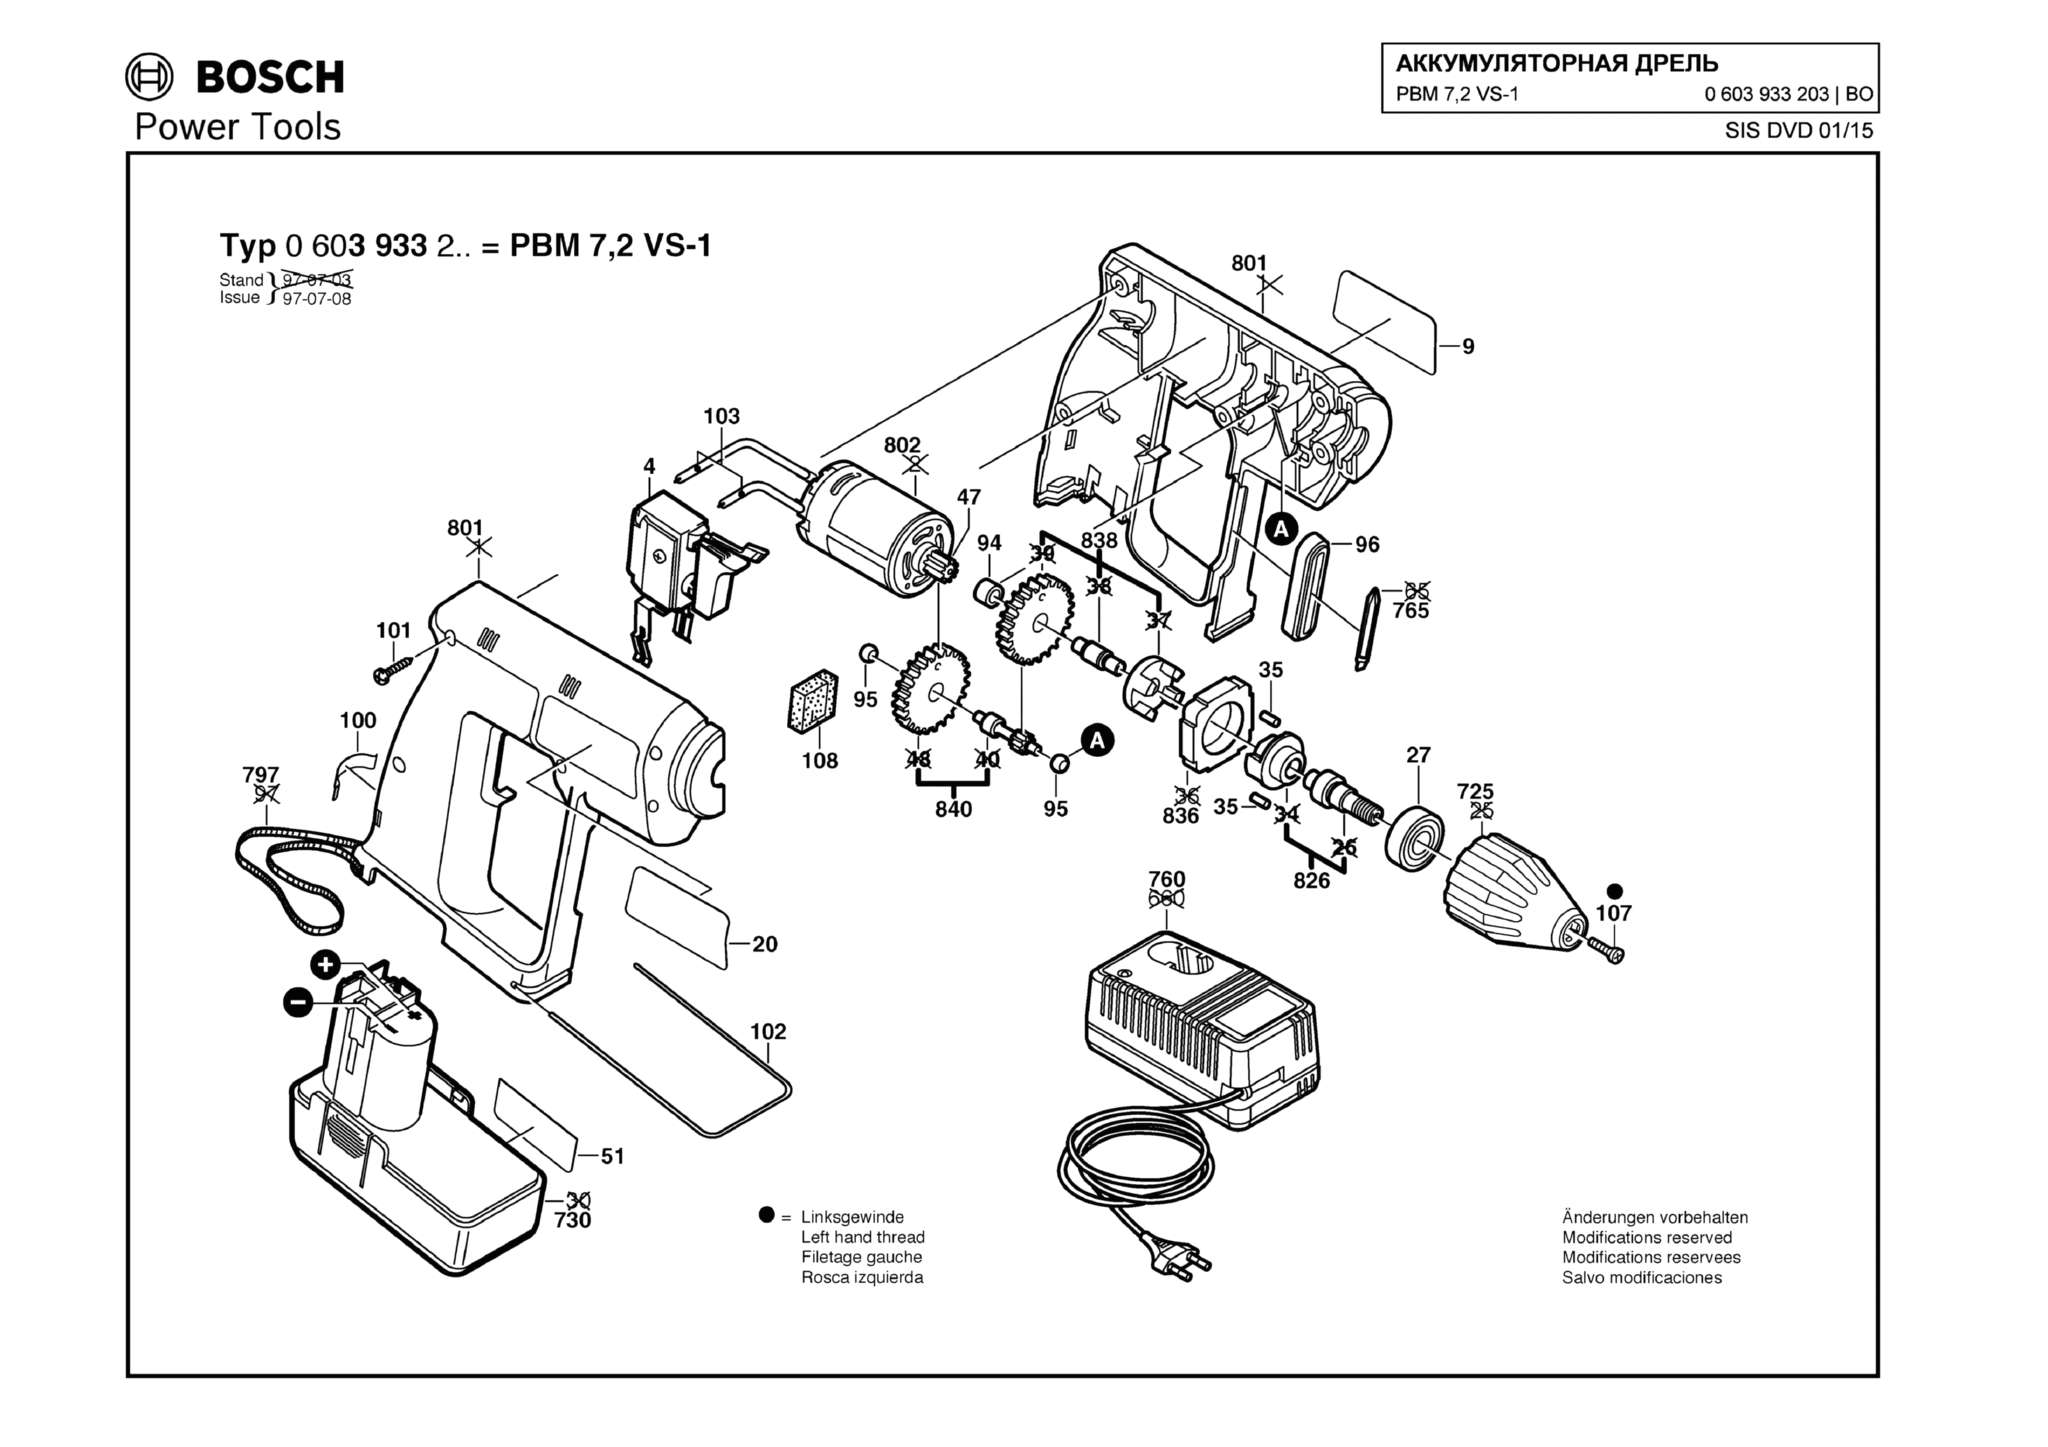 Запчасти, схема и деталировка Bosch PBM 7,2 VS-1 (ТИП 0603933203)